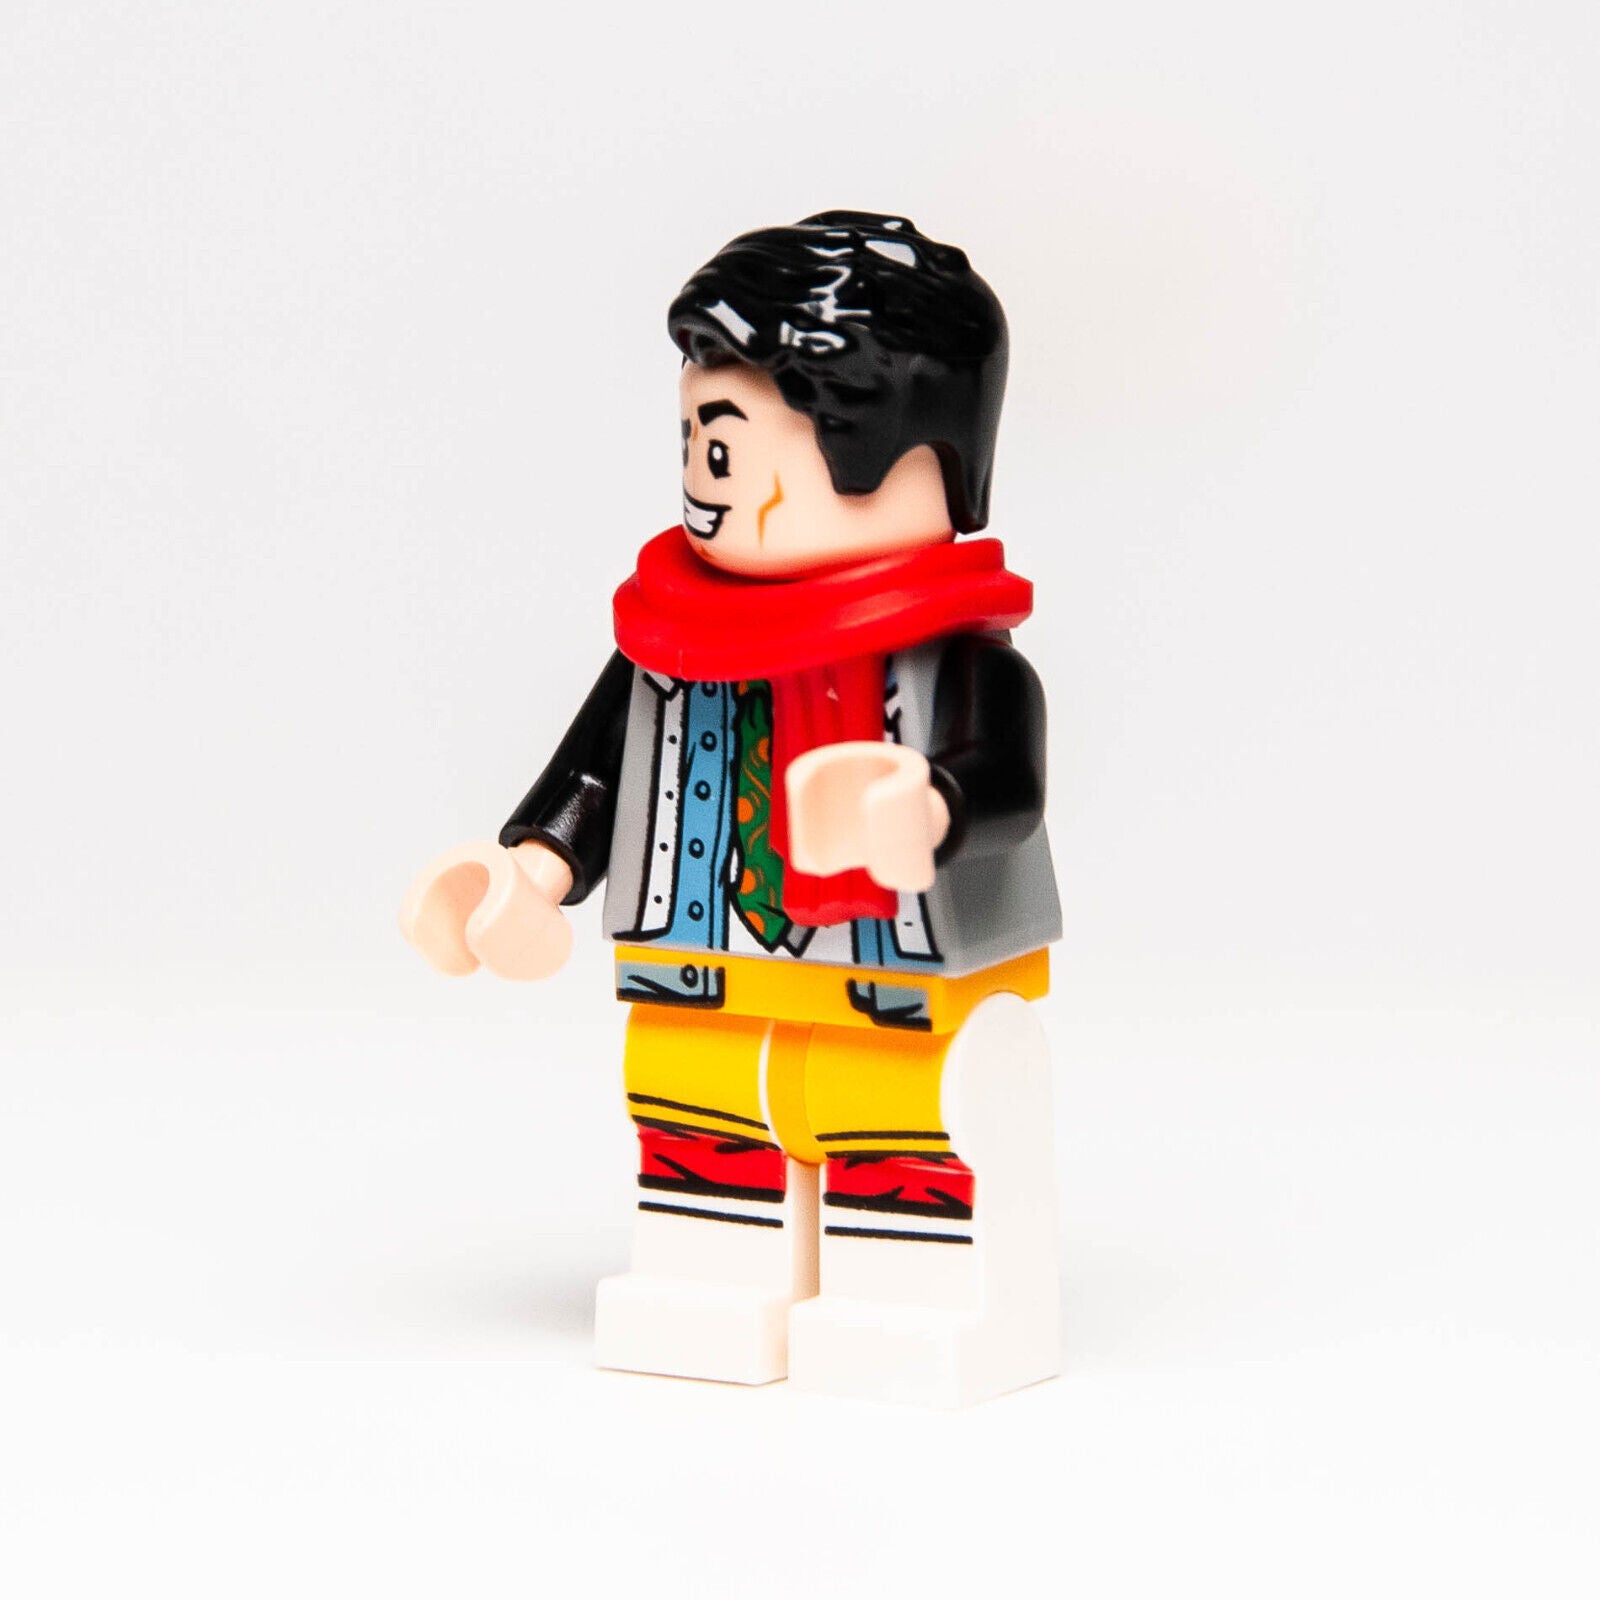 NEW Lego TV Series Friends Minifigure - Joe Tribbiani Red Scarf 10292 ftv003